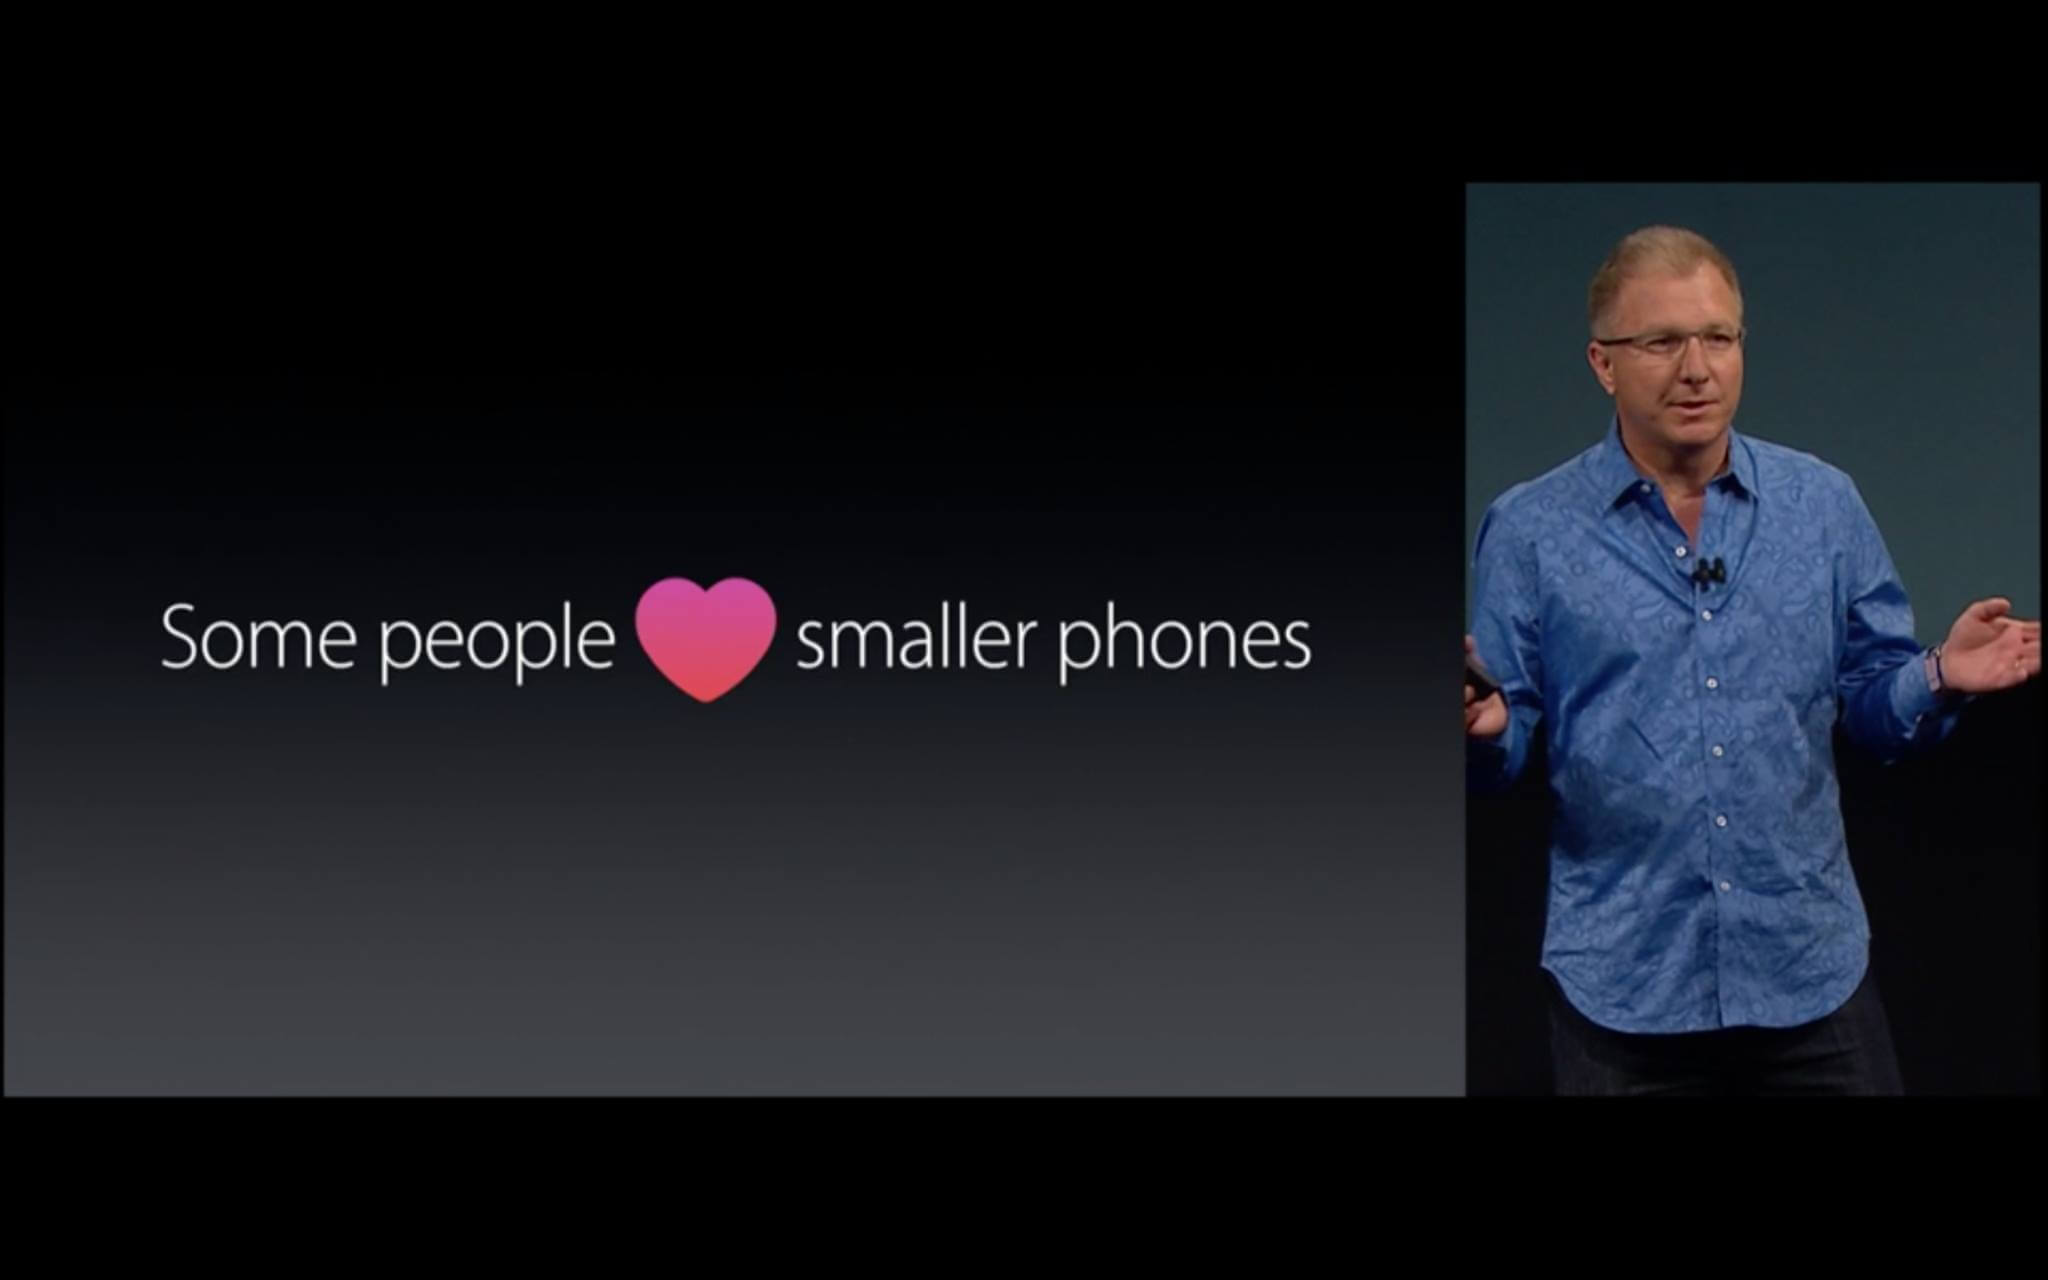 Manche mögen kleinere iPhones